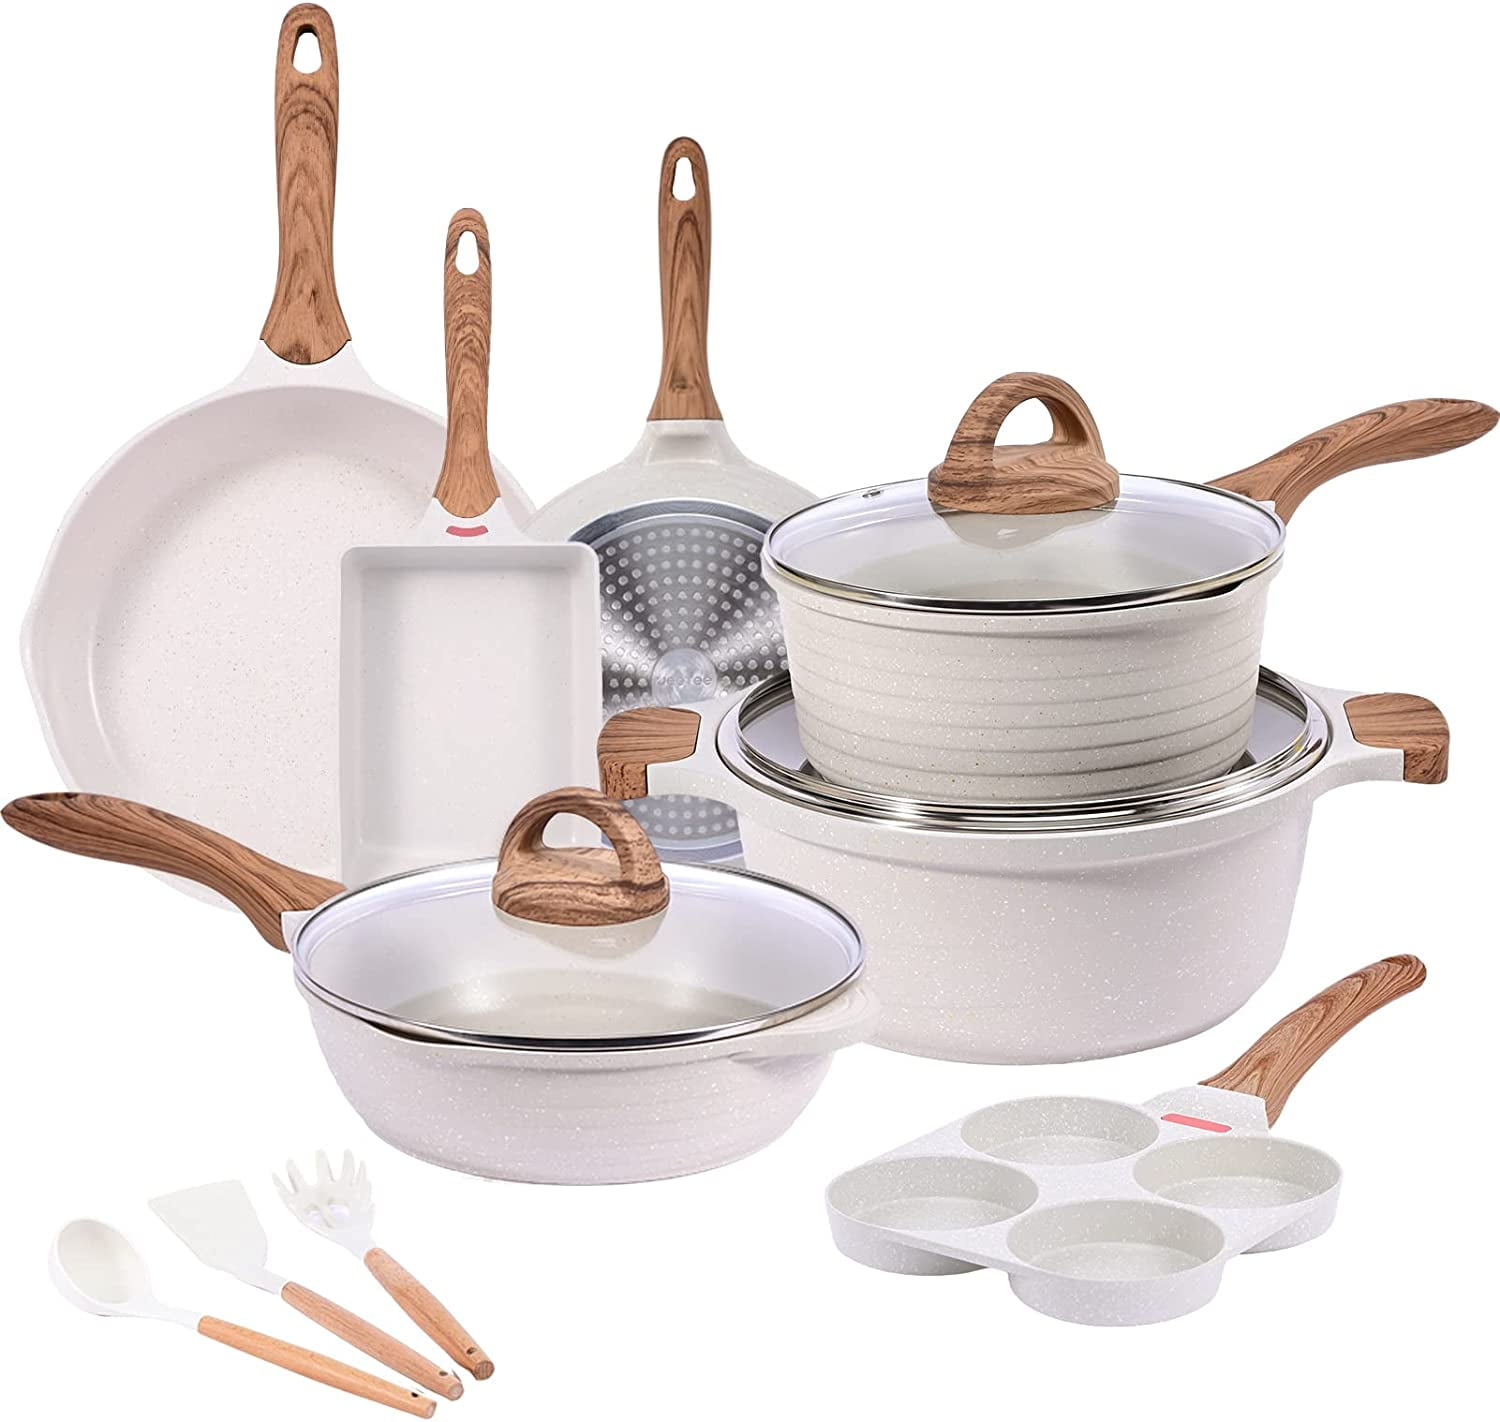 Pots and Pans Set Nonstick Induction Cookware Sets 20 Pcs w/Frying Pan  Saucepan Sauté Pan Griddle Pan Crepe Pan PFOA Free (Grey Granite 20 pieces)  